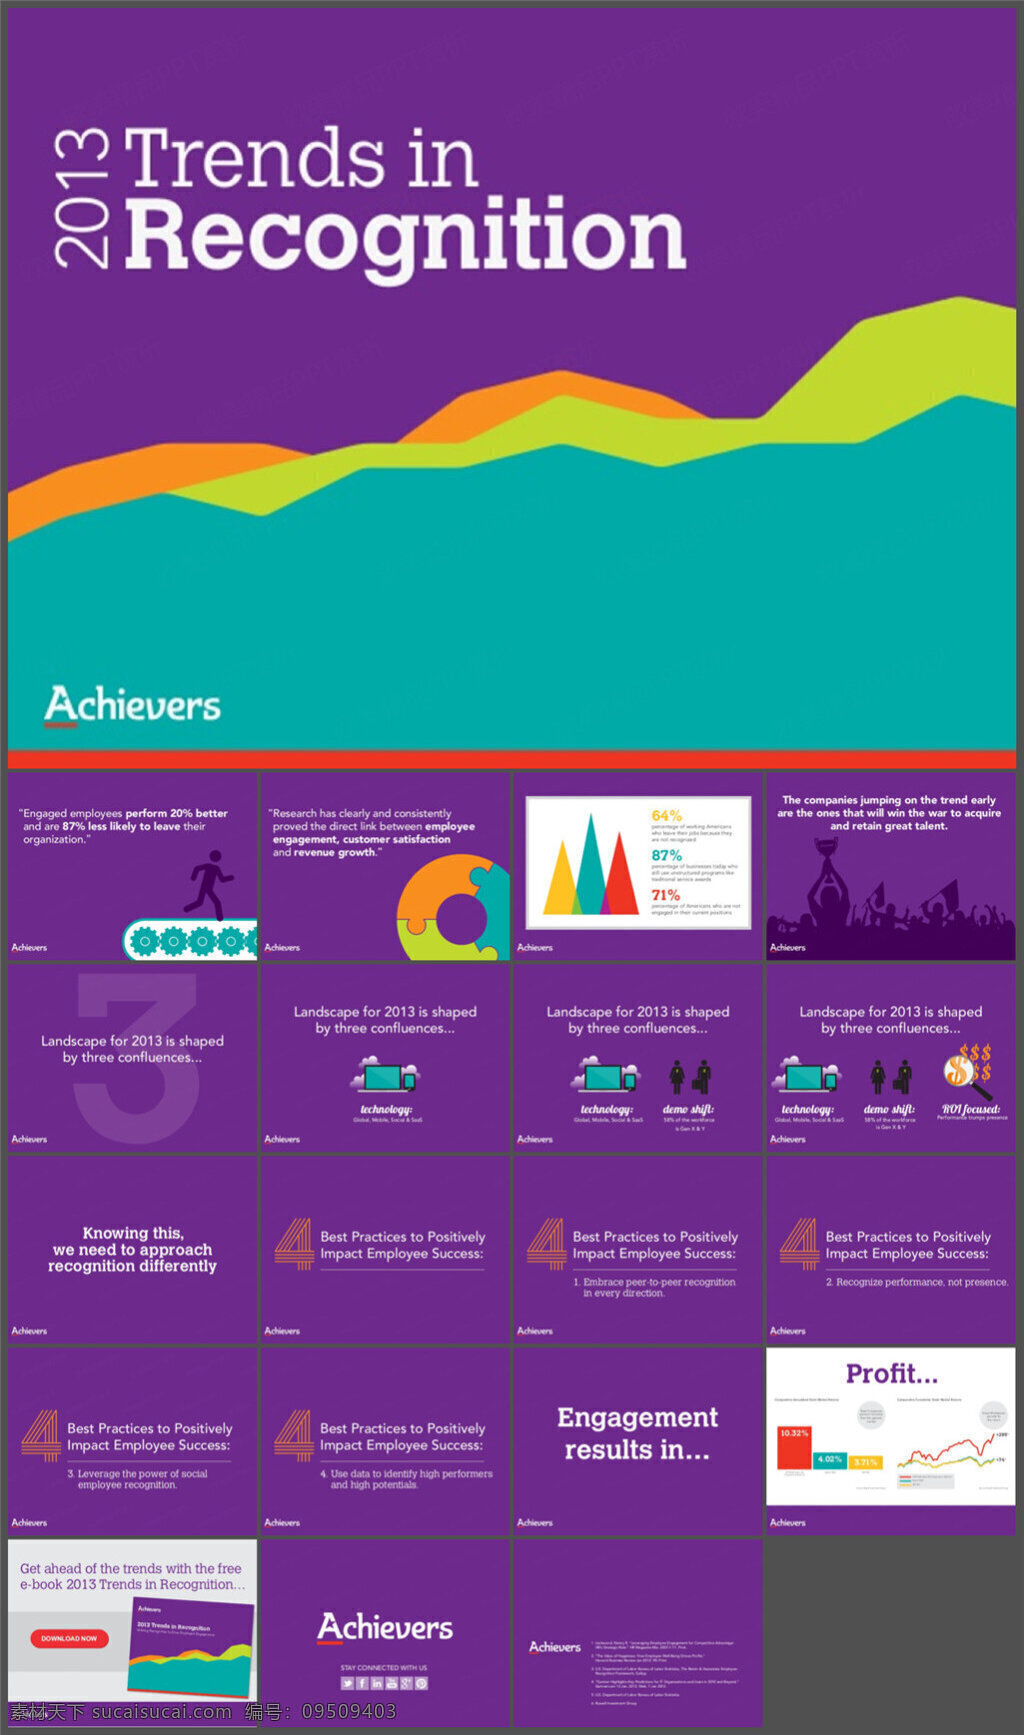 紫色 欧美 简约 创意 扁平 商务 模板 图表 制作 多媒体 企业 动态 模版素材下载 ppt素材 pptx